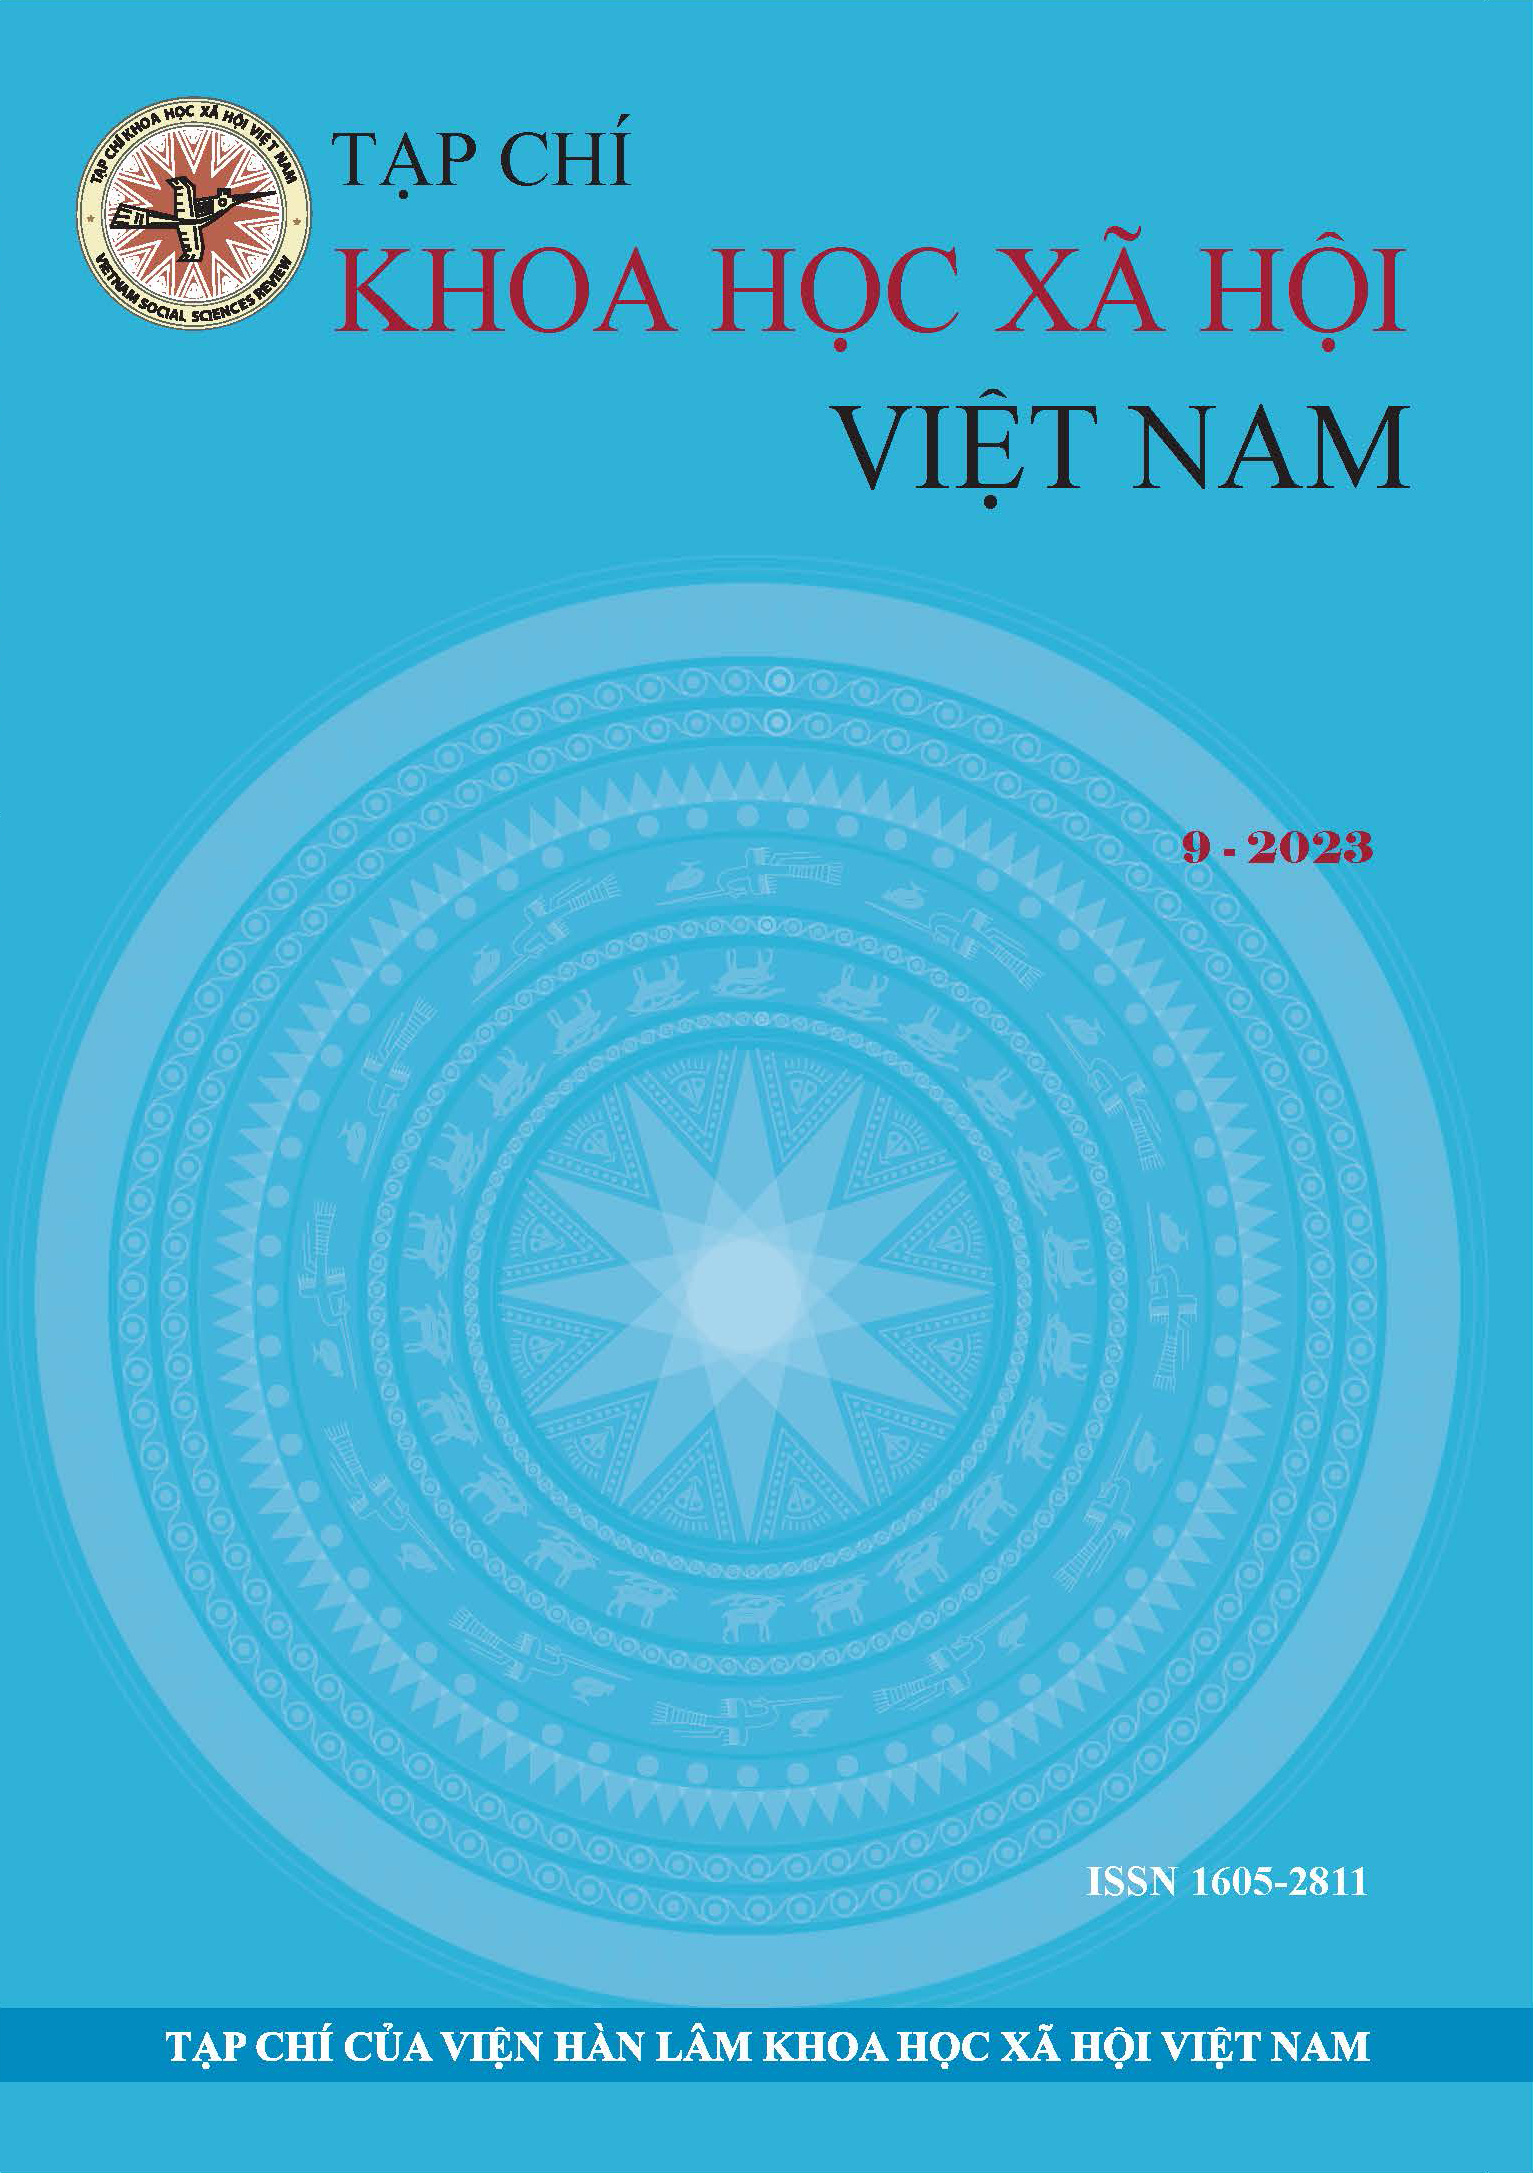 Tạp chí Khoa học xã hội Việt Nam. Số 9 - 2023 